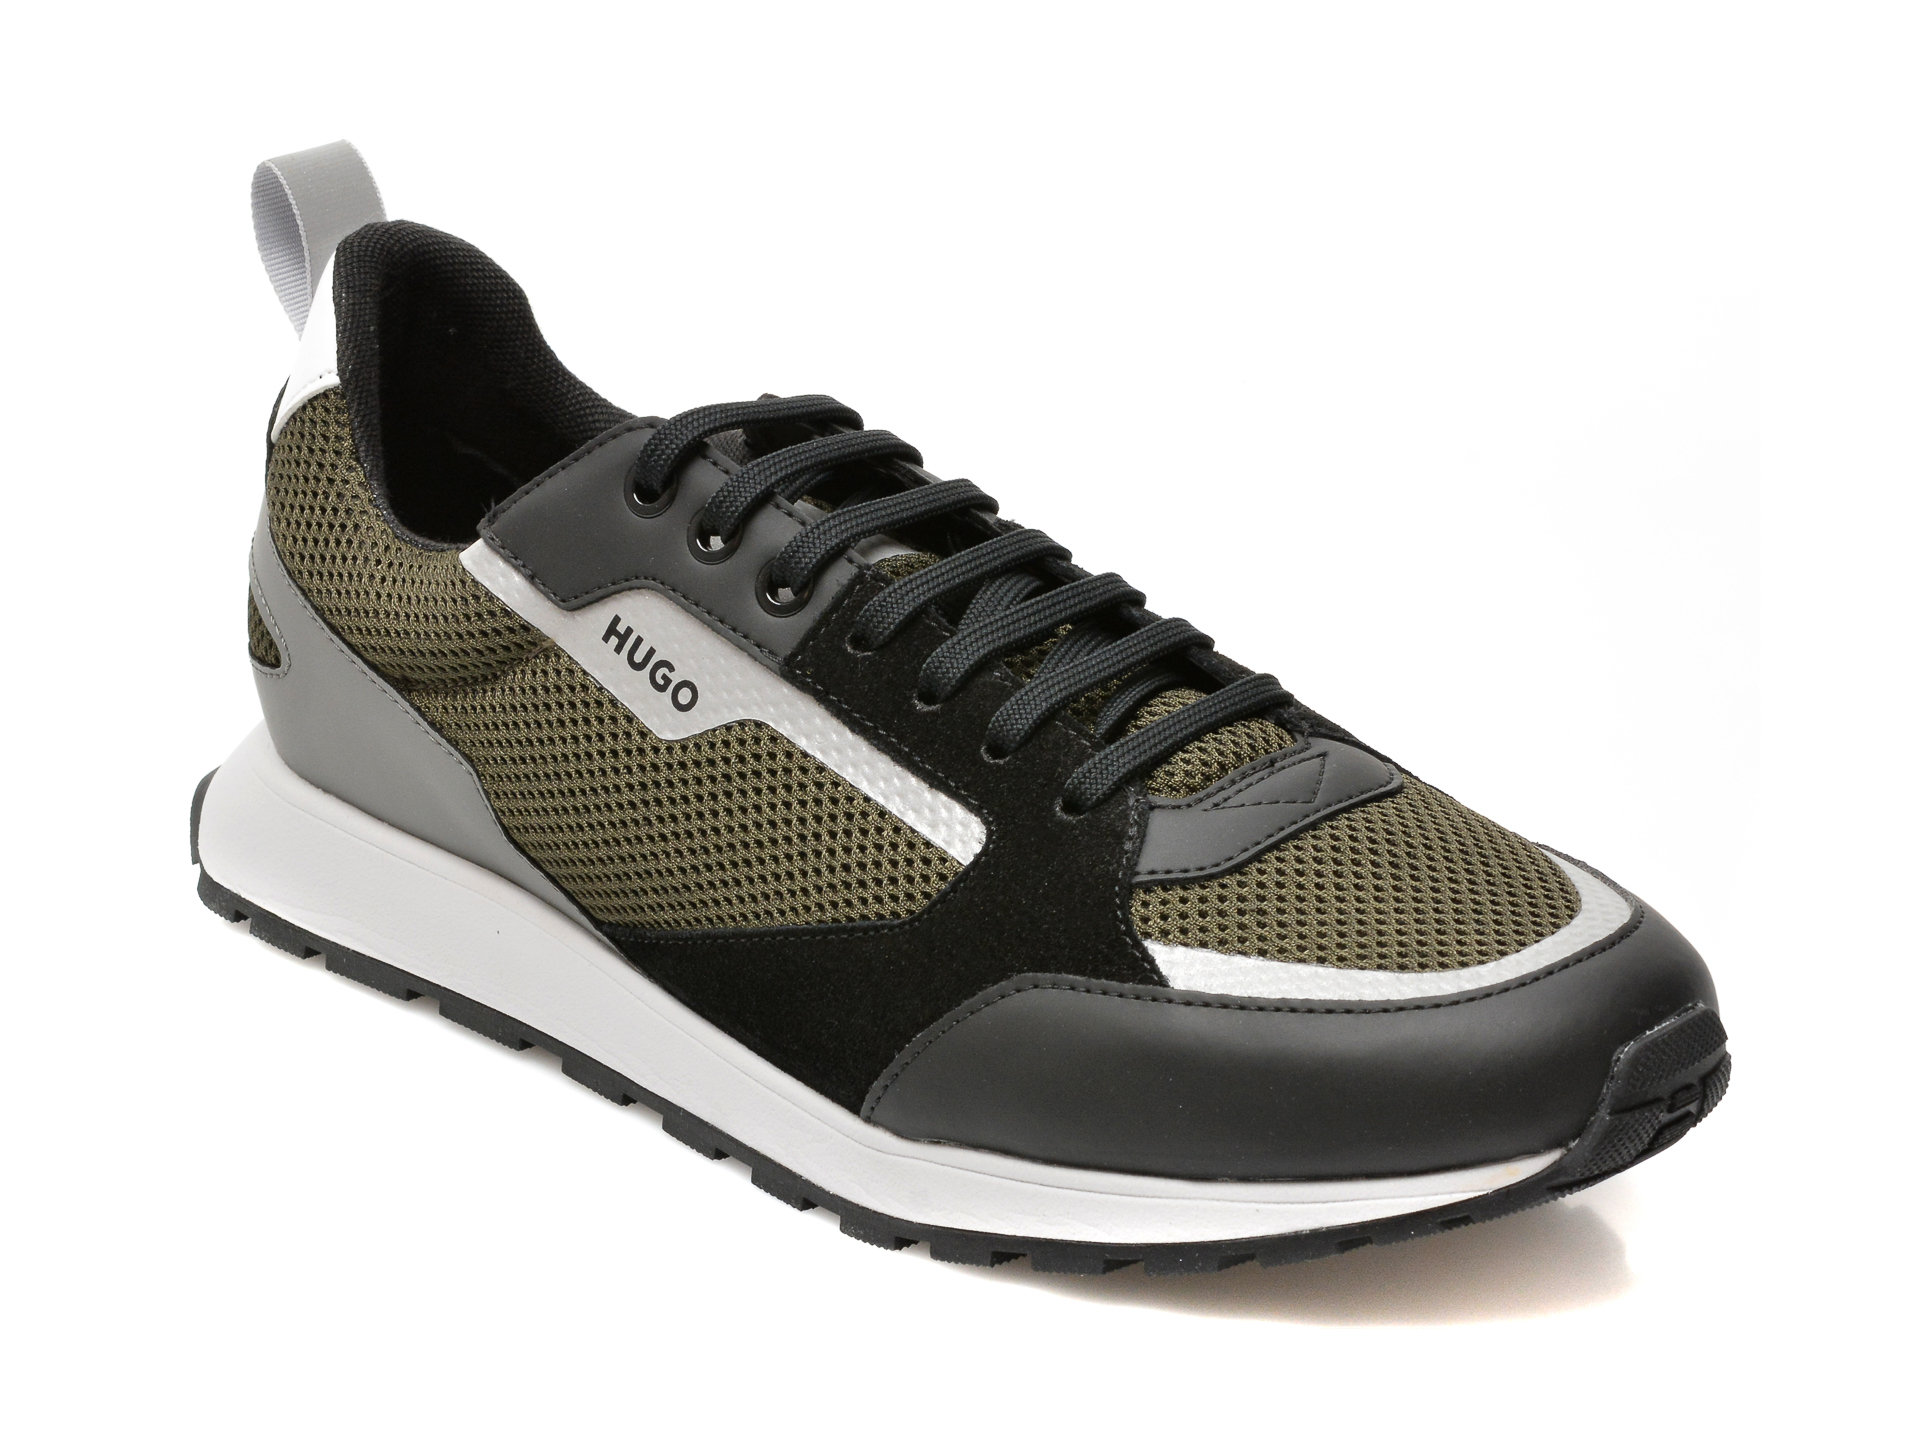 Pantofi sport HUGO BOSS negri, 360, din material textil si piele naturala /barbati/pantofi